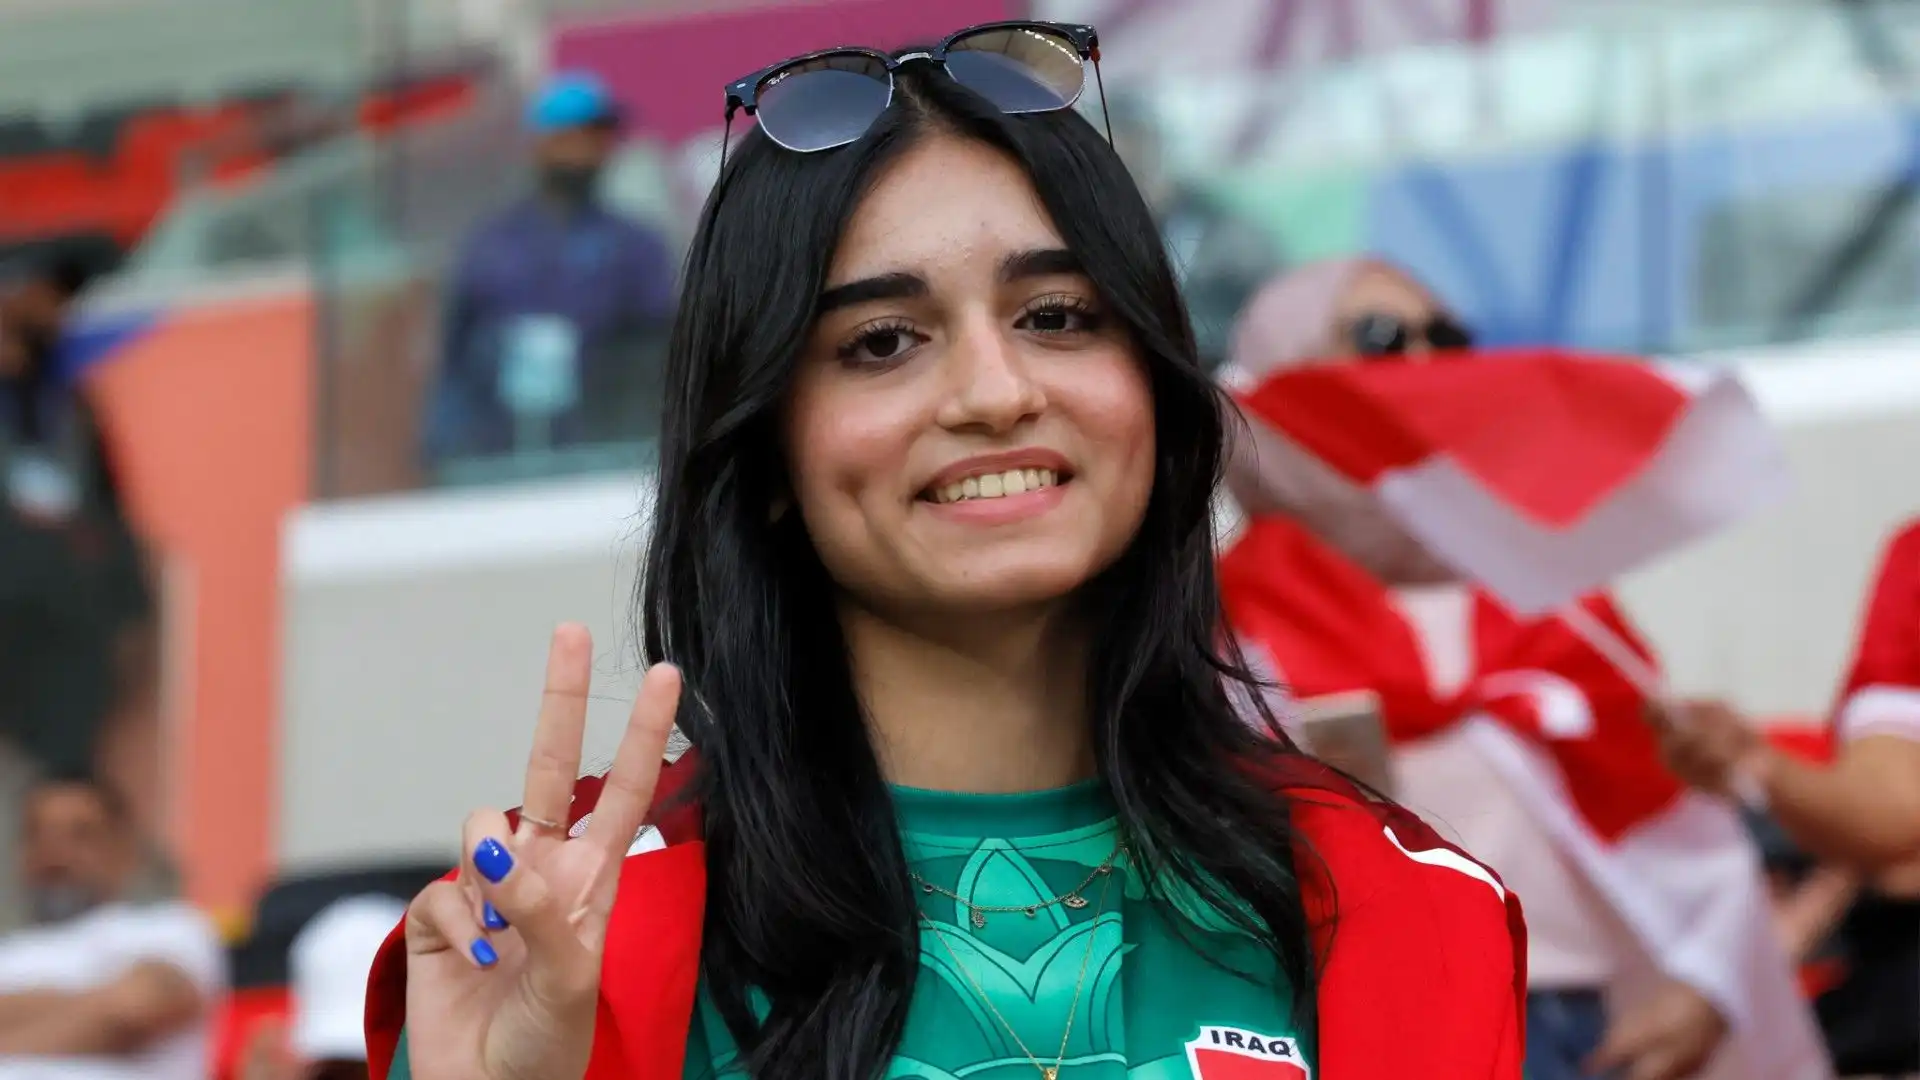 In foto una ragazza con la maglia della nazionale dell'Iraq